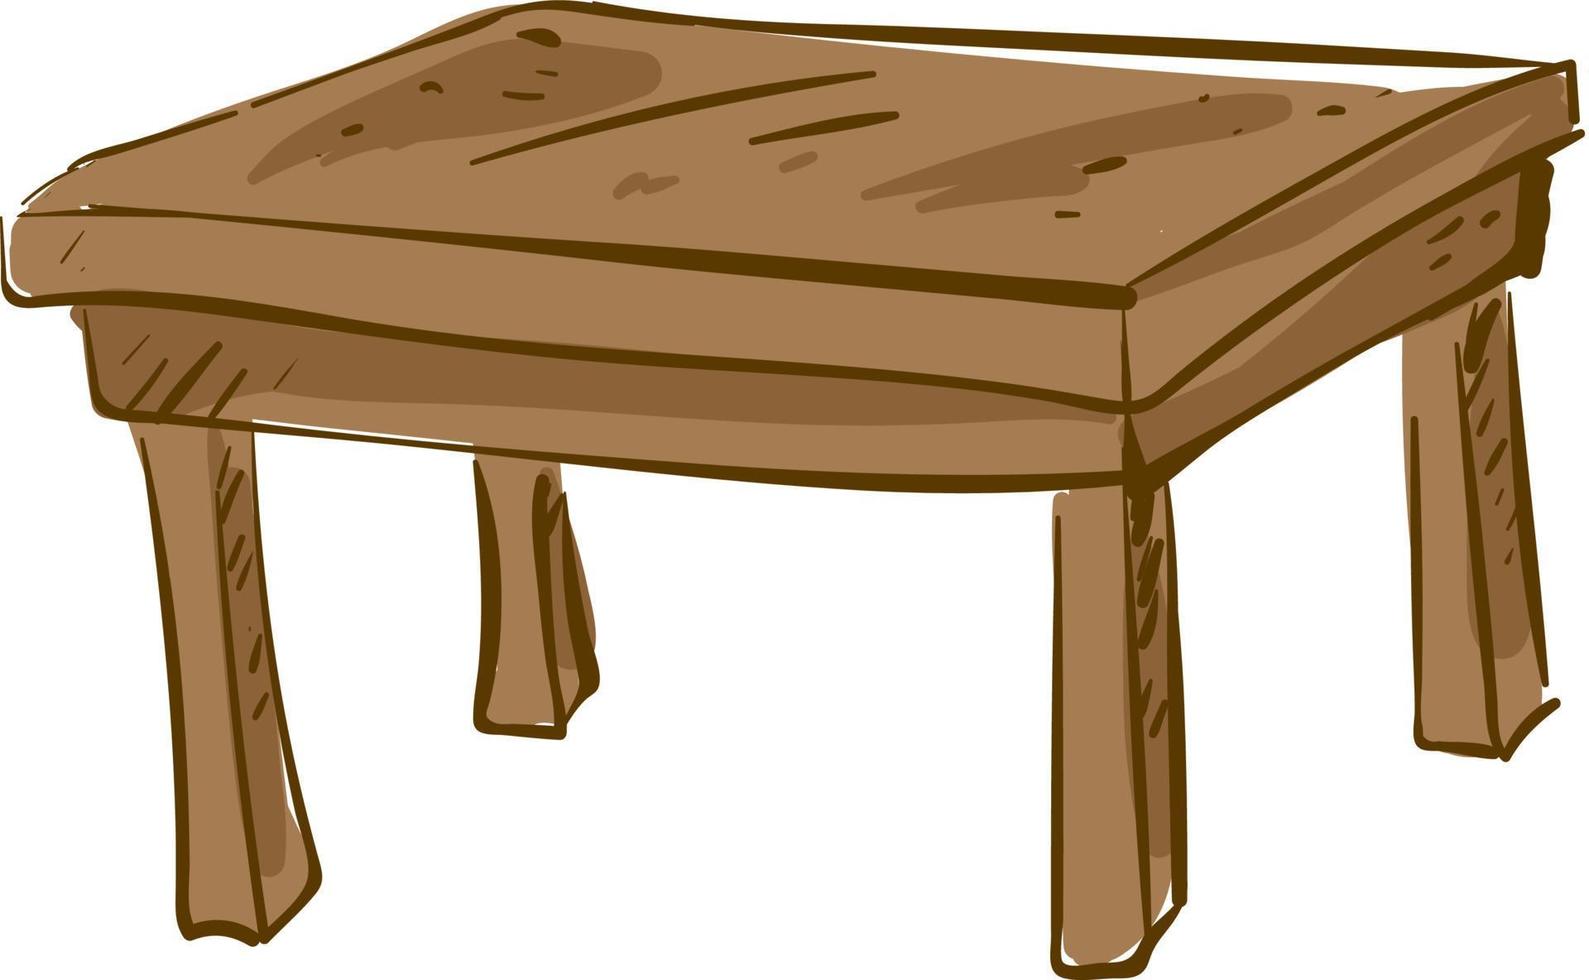 trä- tabell, illustration, vektor på vit bakgrund